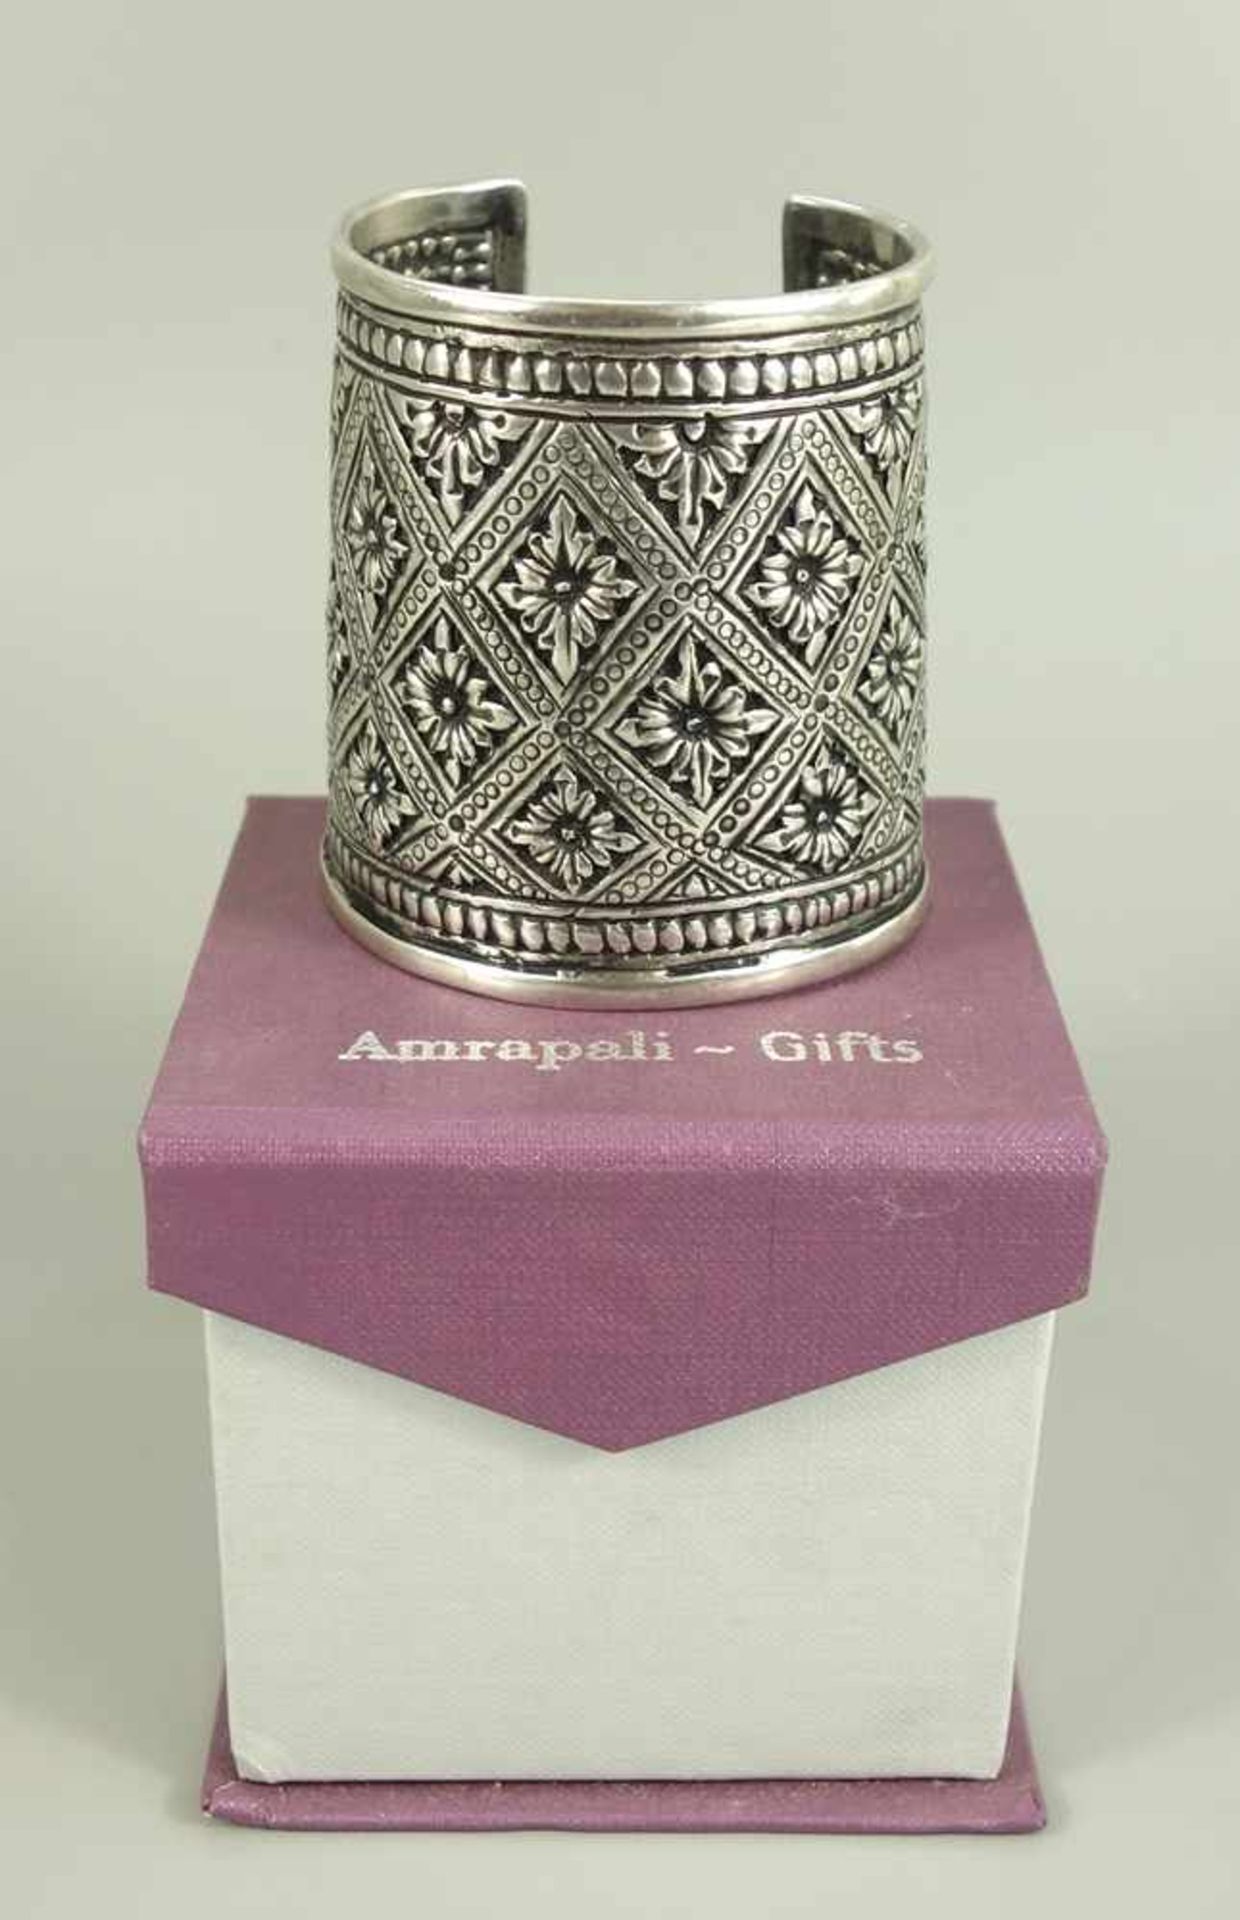 Armmanschette, Amrapali, Indien, 925er Silber, umlaufend eckige Ornamente mit Blüten, H.7cm, D.